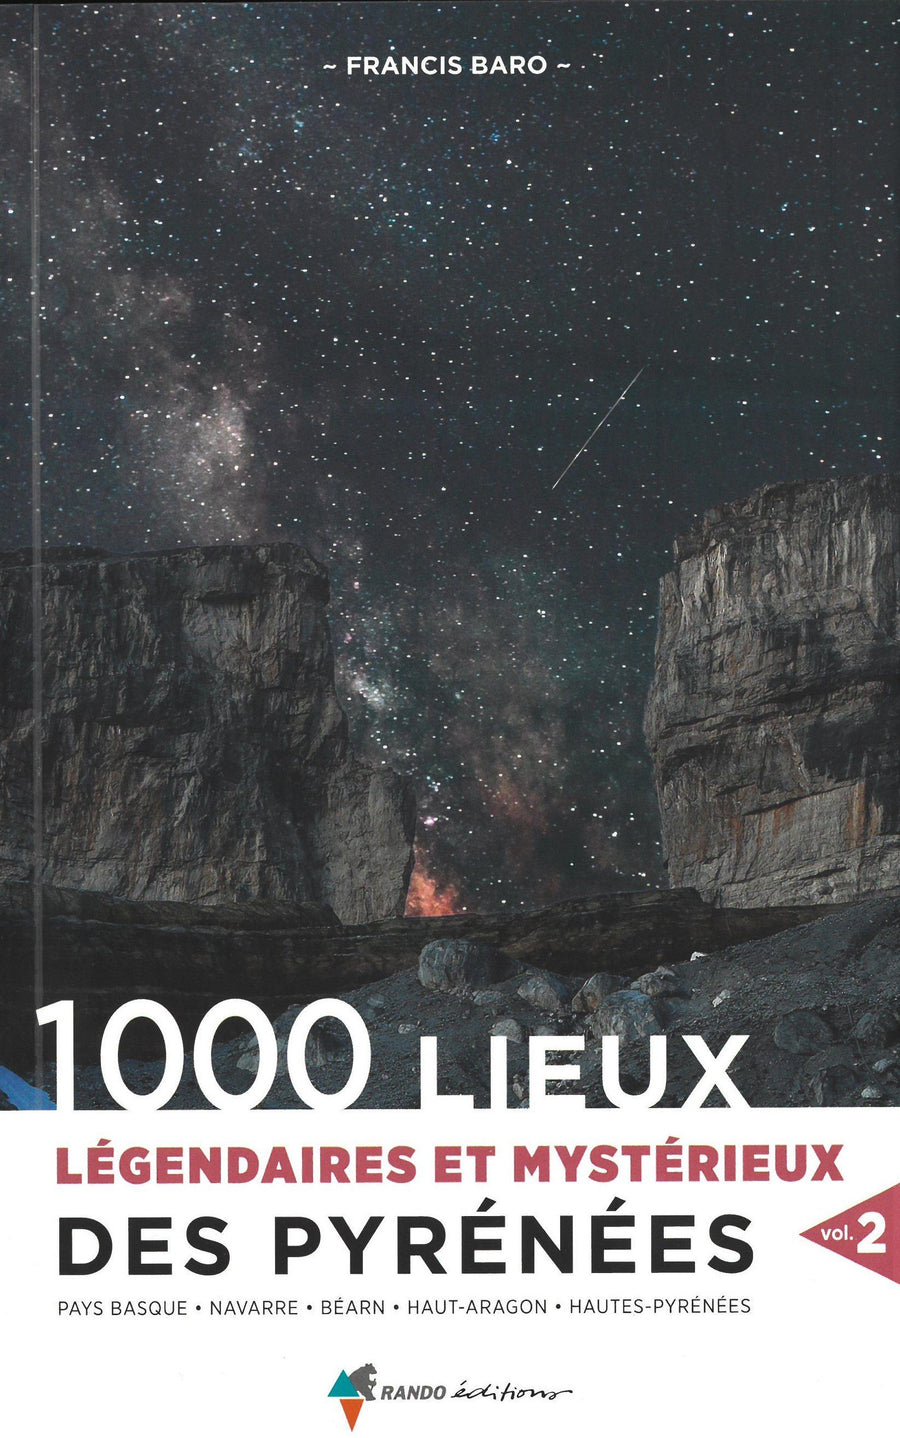 Beau livre - 1000 lieux légendaires et mystérieux des Pyrénées (volume 2) | Rando Editions beau livre Rando Editions 